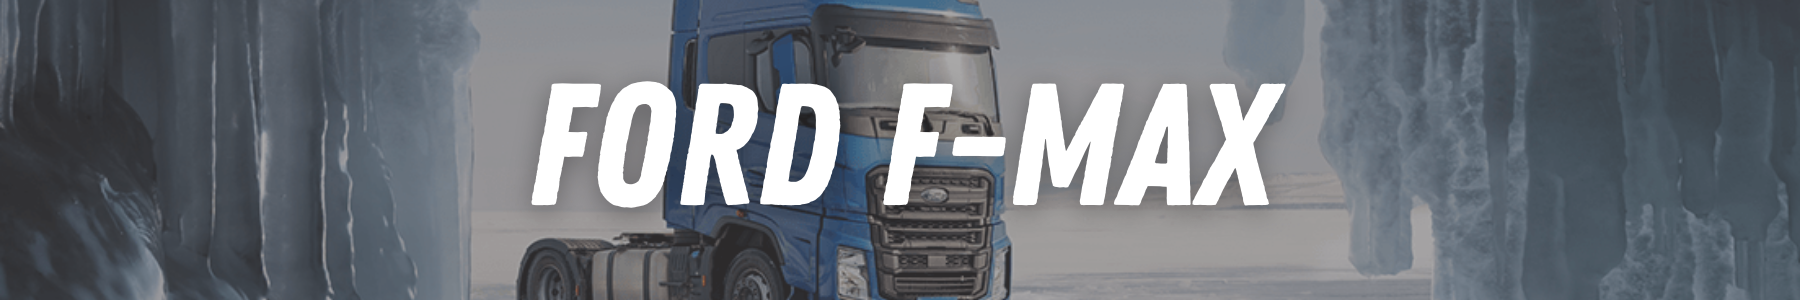 Accessoires et tuning pour votre camion poids lourd FORD F-MAX 22h22